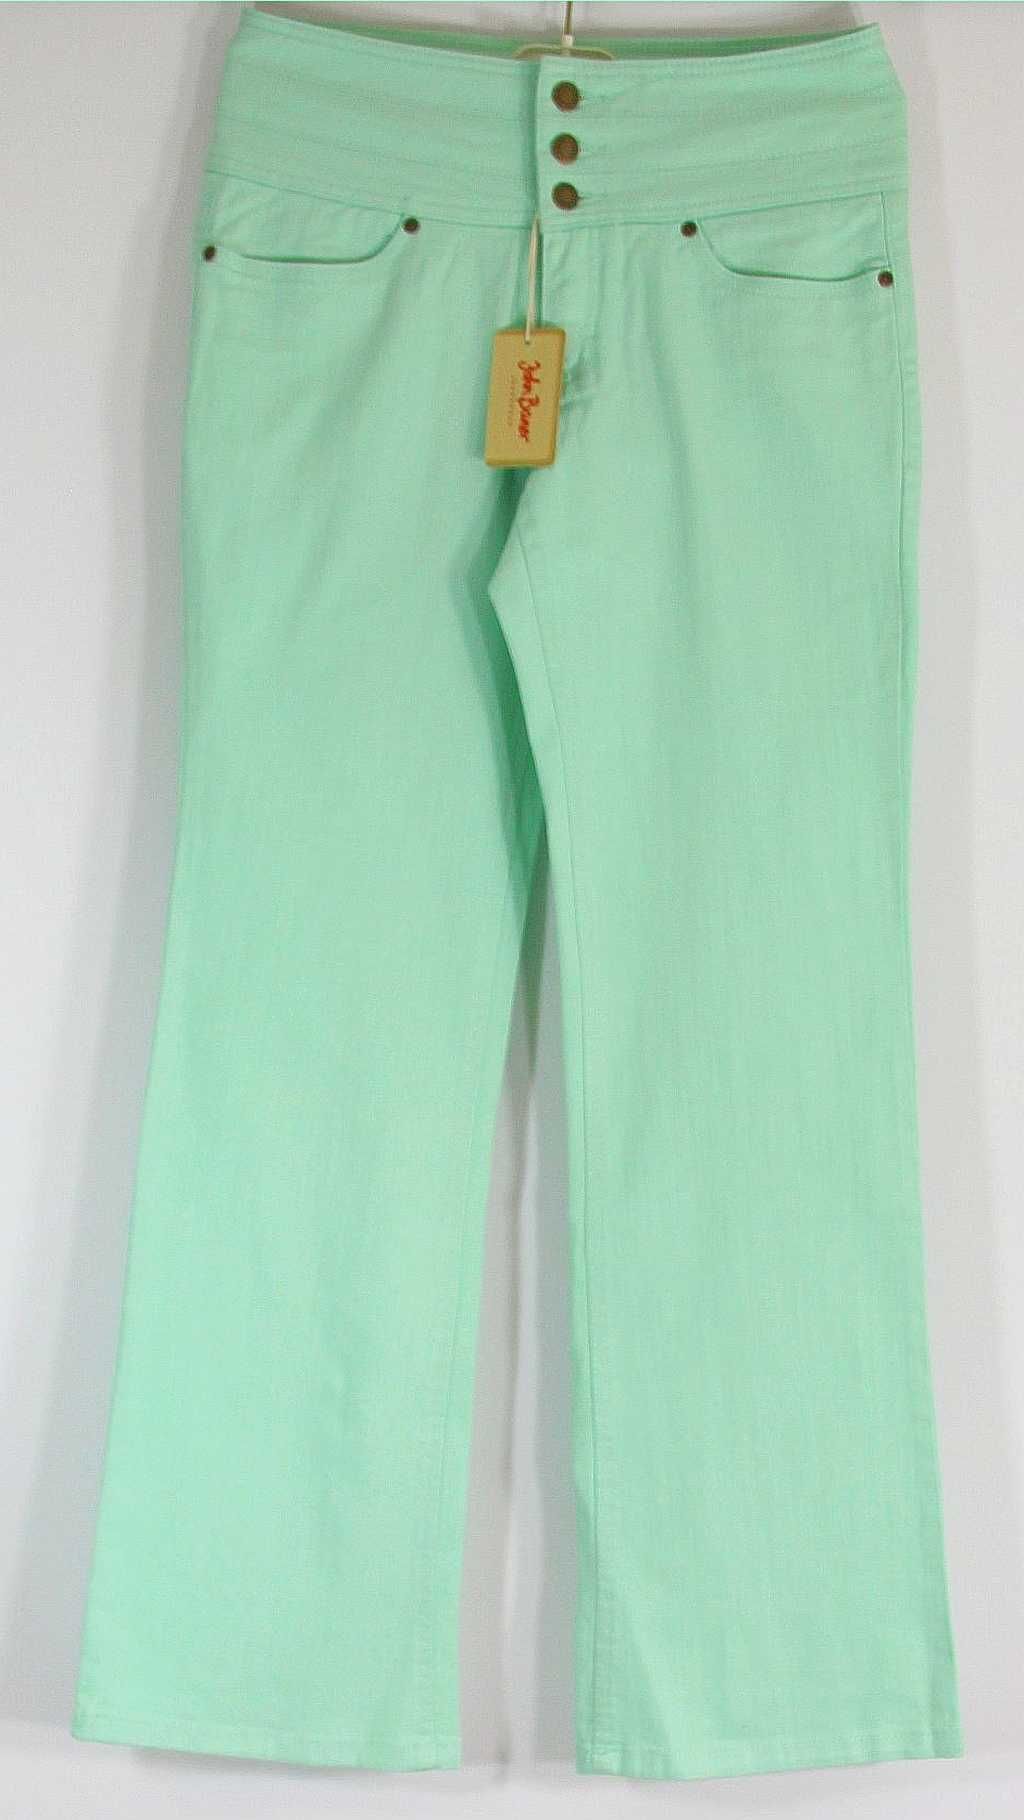 Spodnie jeans zielone seledyn dzwony R 40/42 na niskich